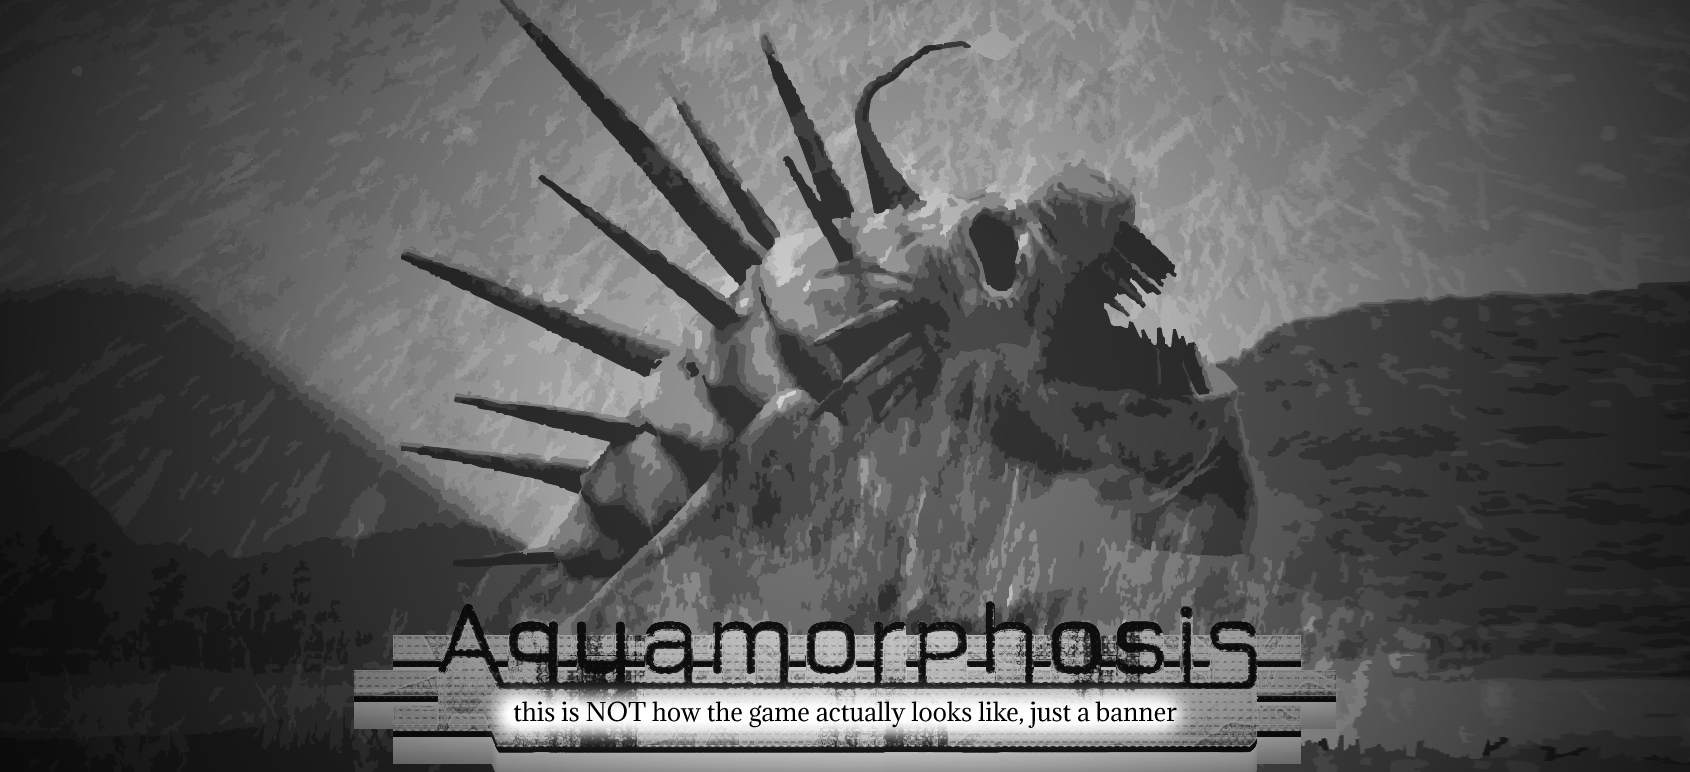 Aquamorphosis